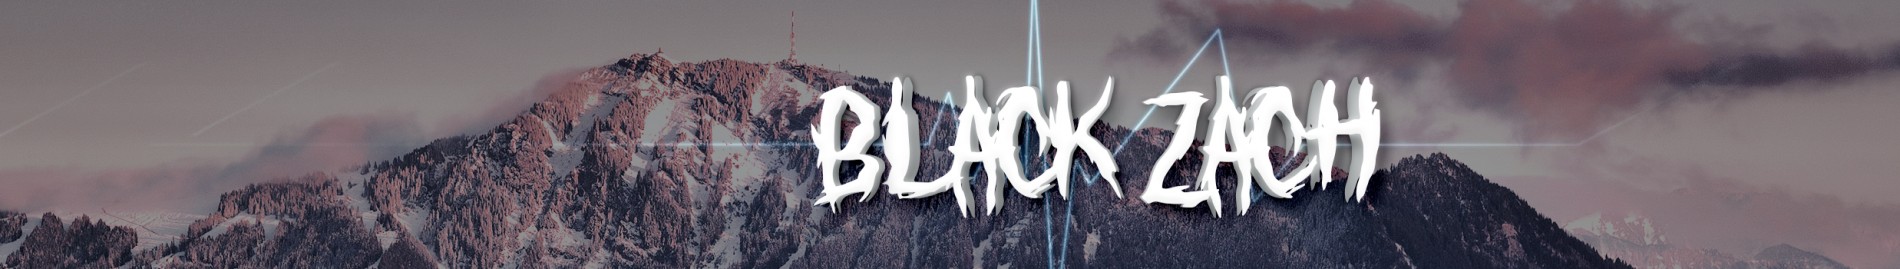 BlackZach14